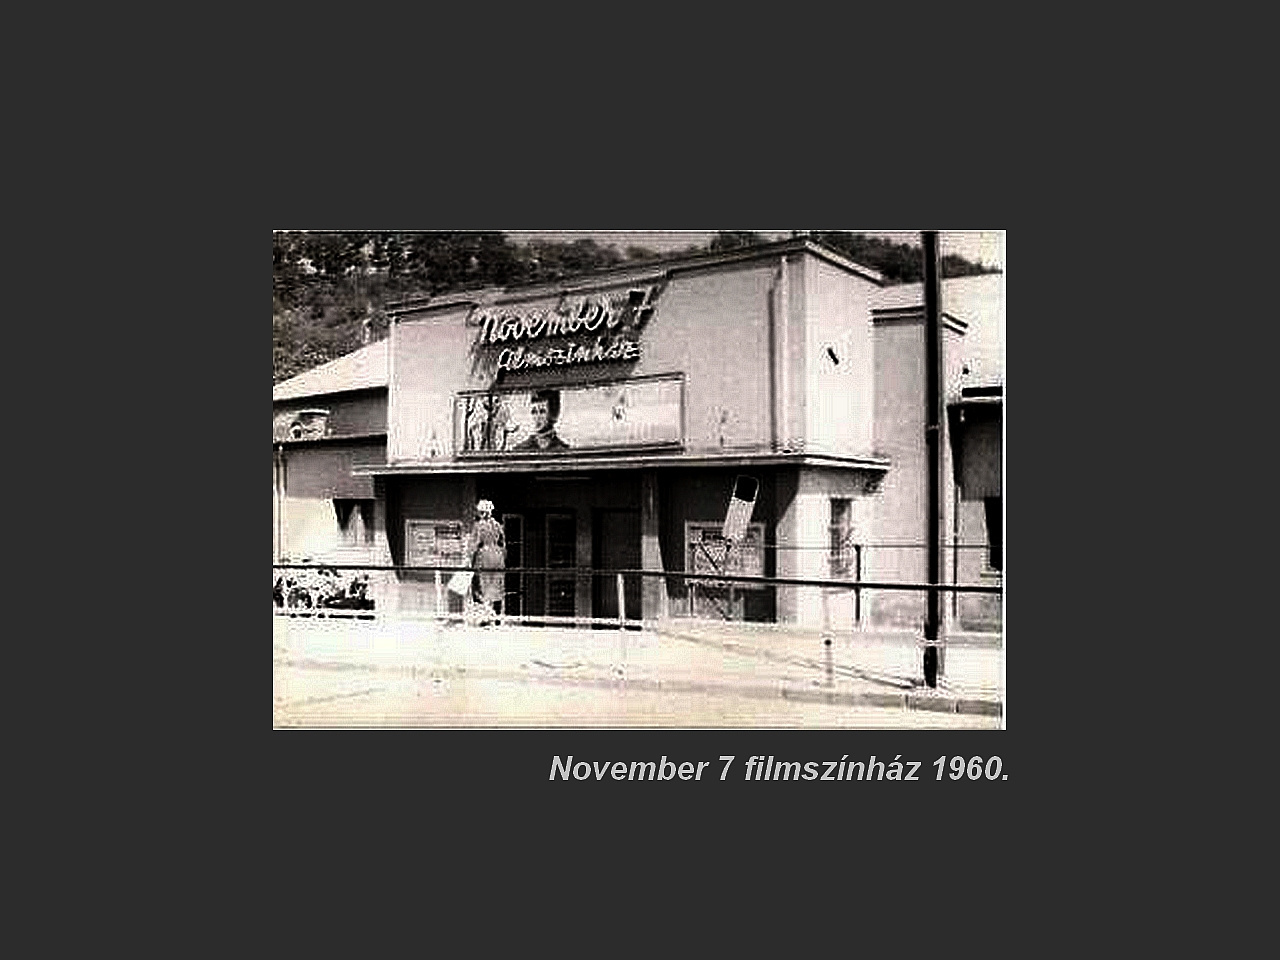 Salgótarján régen, November 7 mozi régen